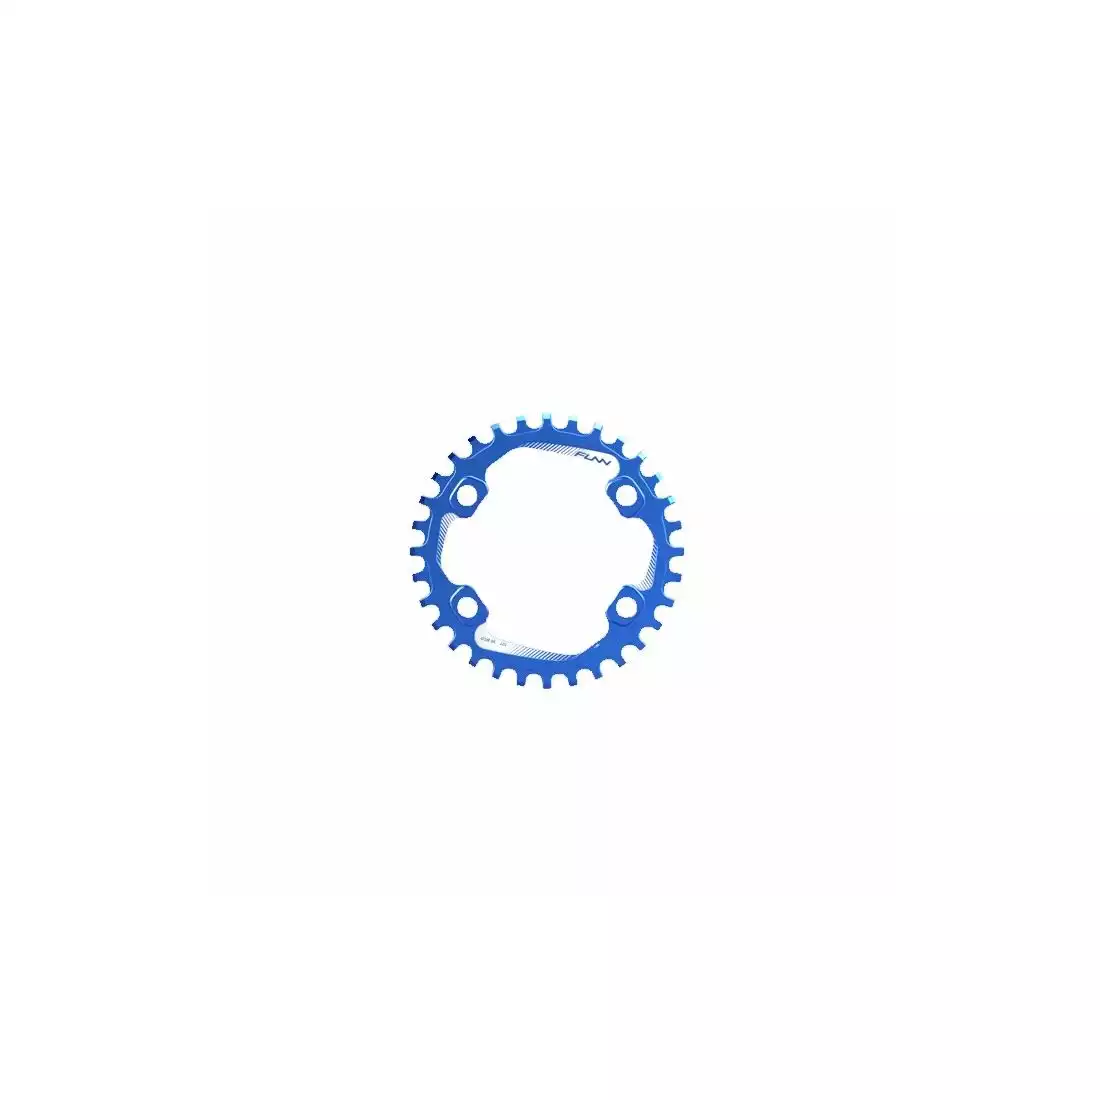 FUNN SOLO 96 BCD NARROW WIDE 32T řetězové kolo na kliku modrý